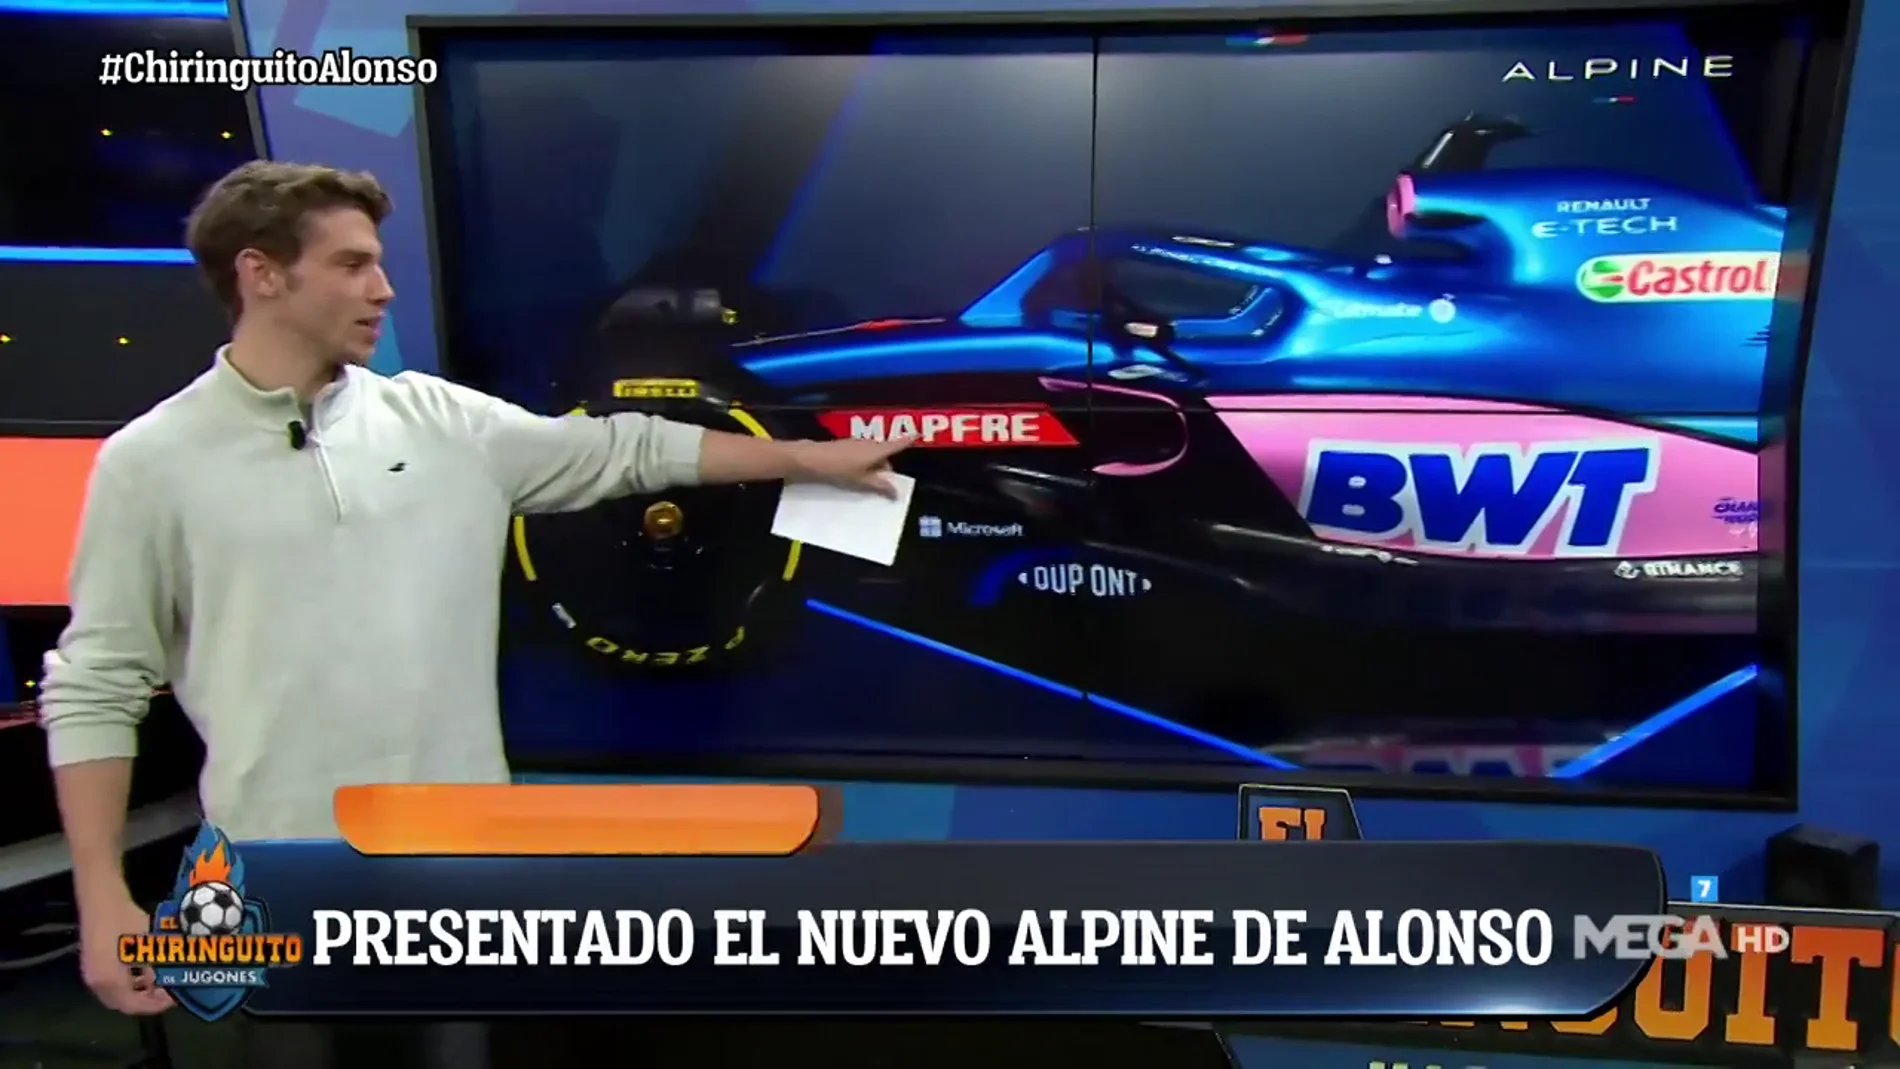 ¿Qué es lo más llamativo del coche de Alonso?